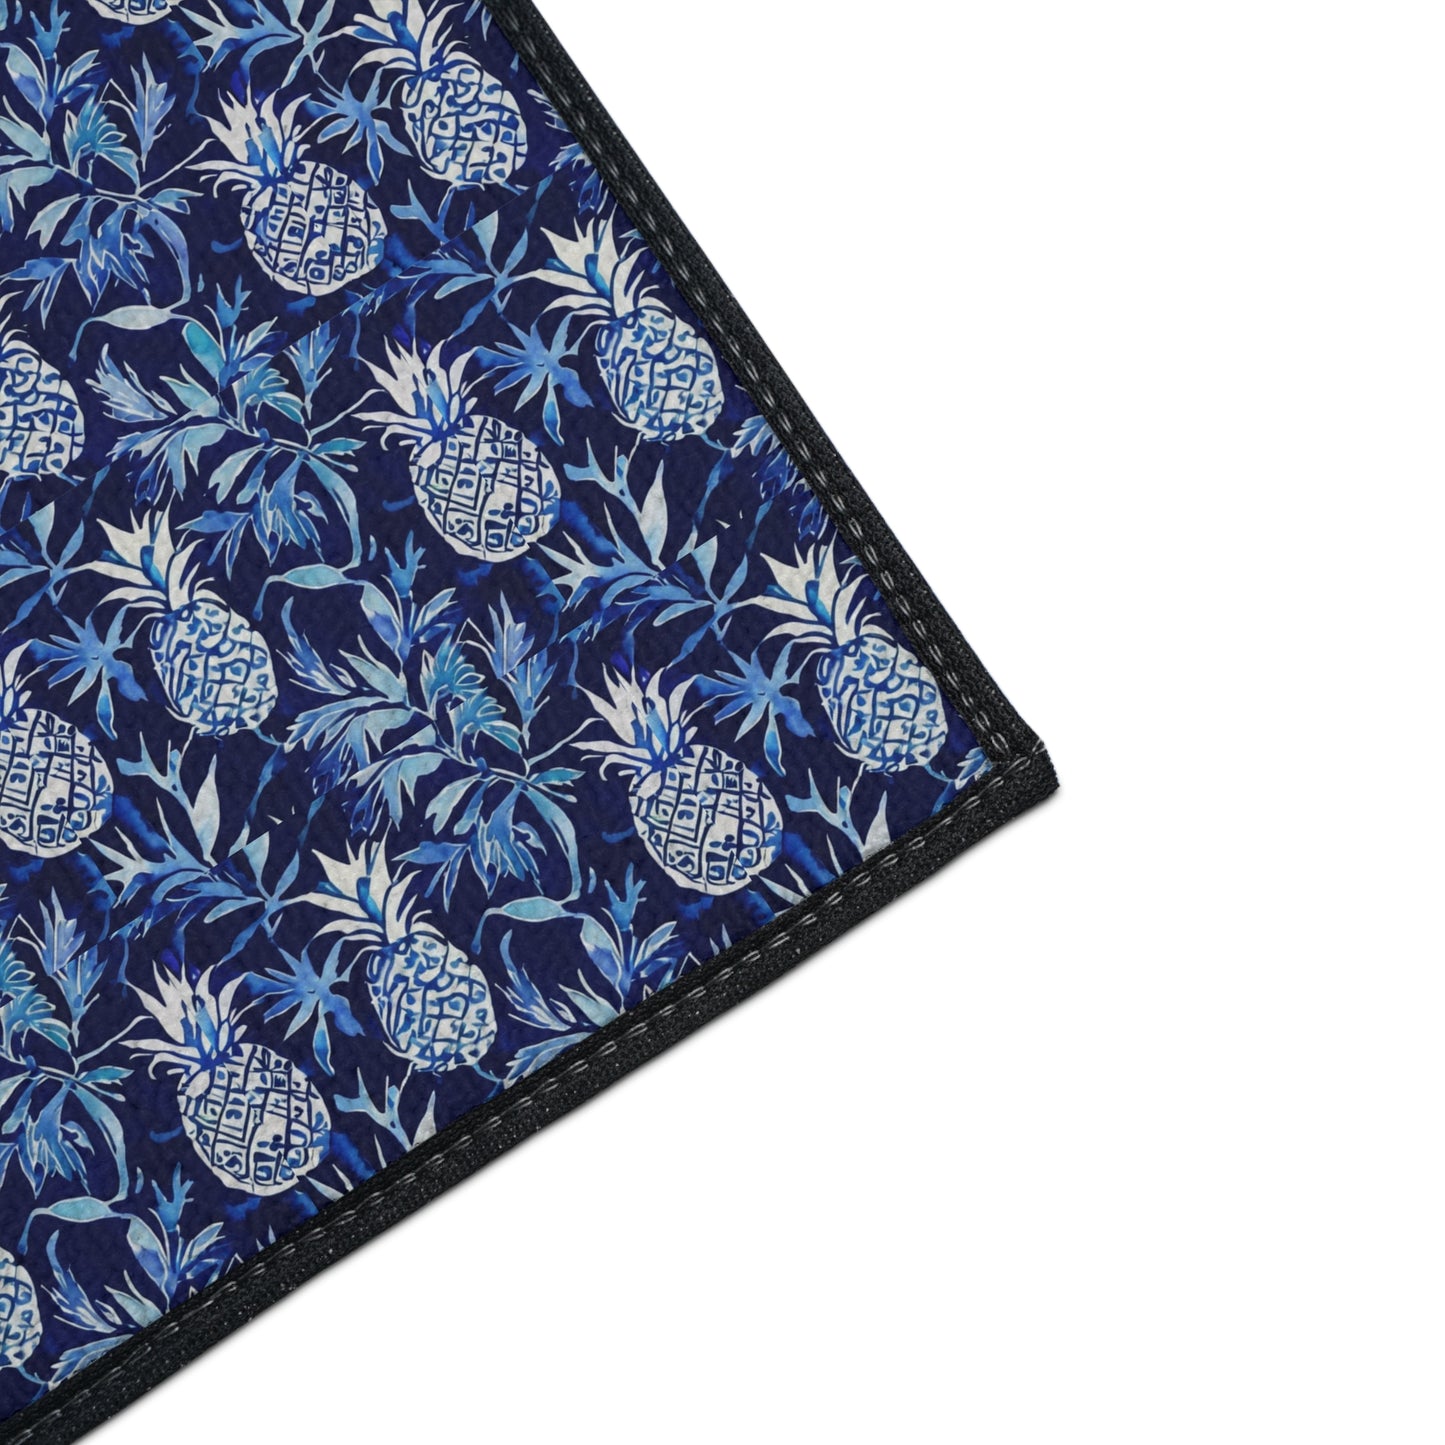 Blue and White Pineapple Batik Decorative Indoor Outdoor Heavy Duty Floor Mat